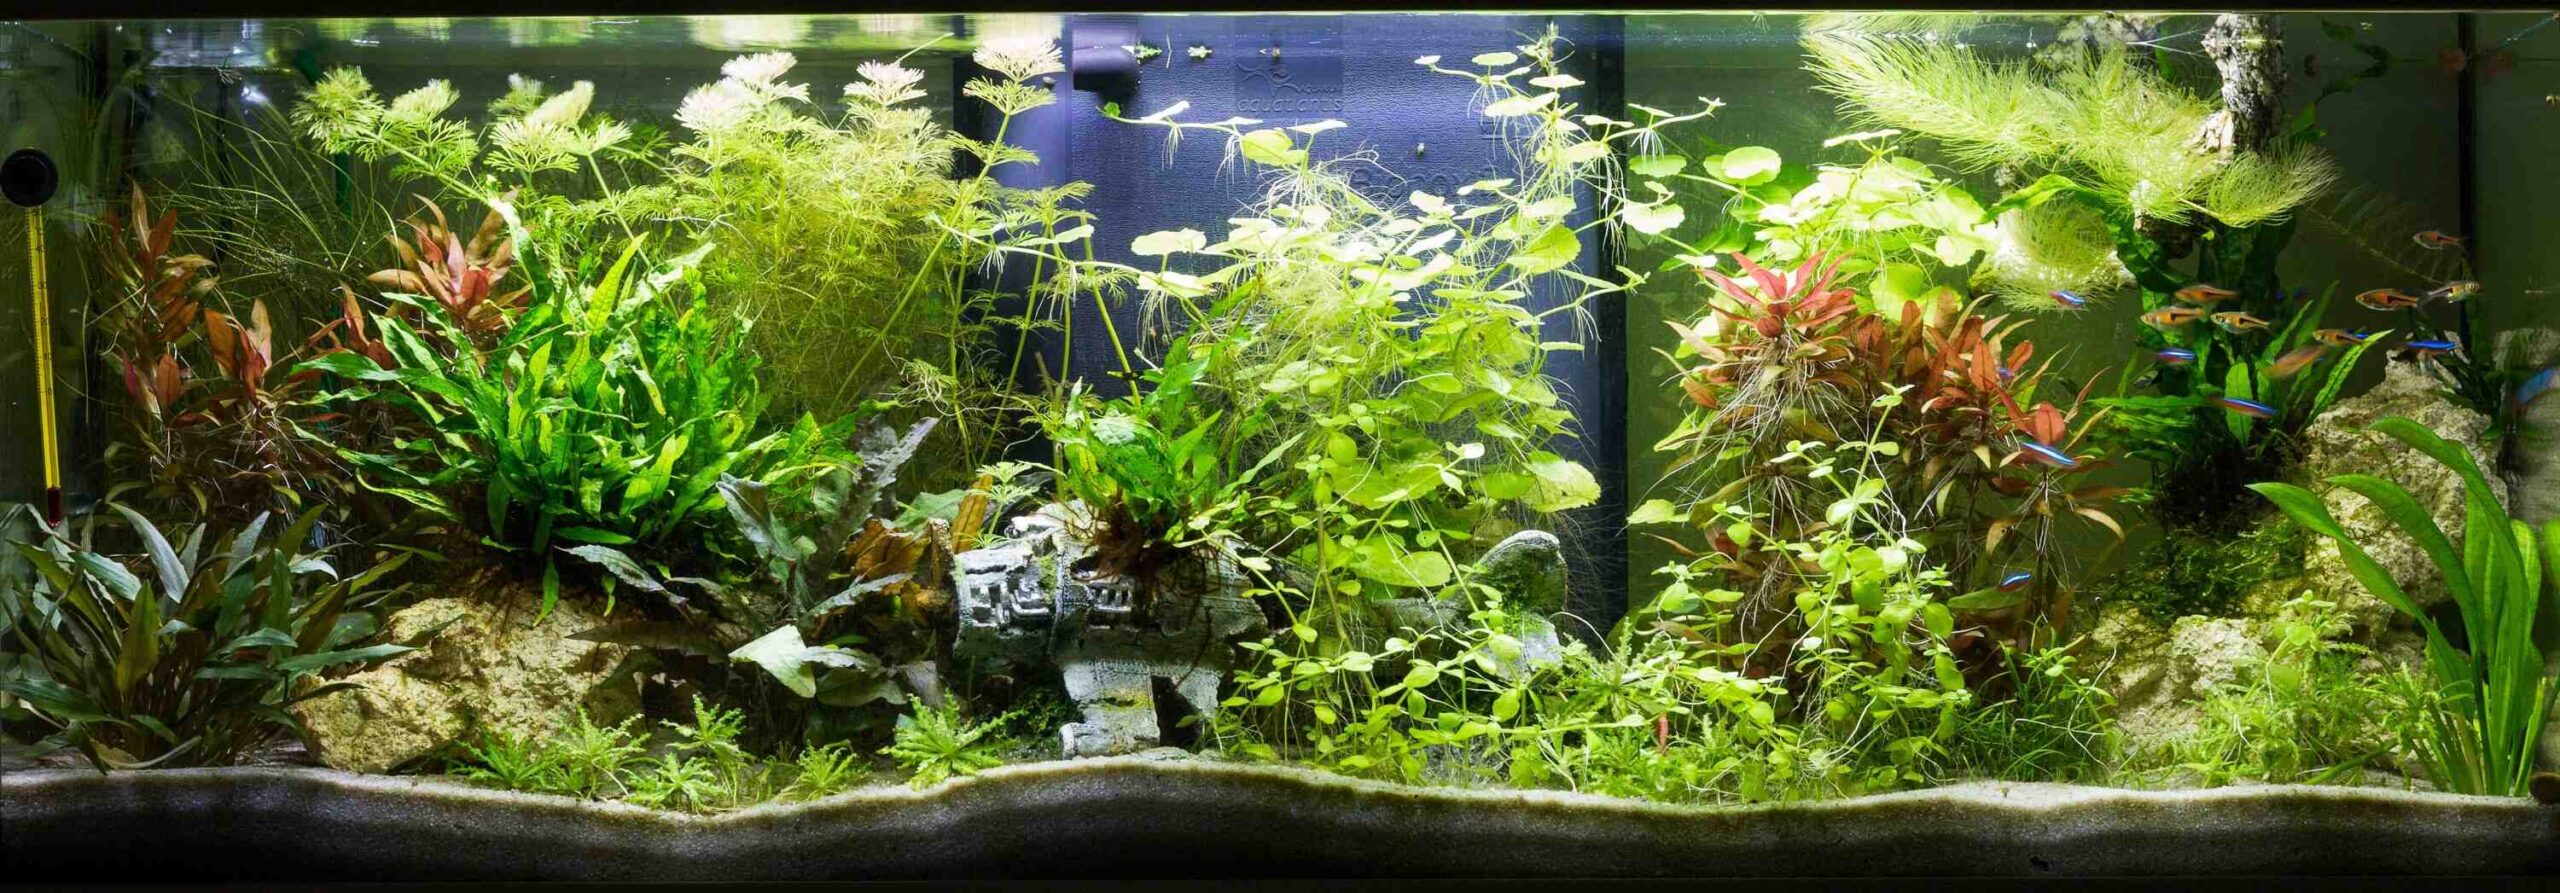 Comment obtenir de belles plantes dans un aquarium?